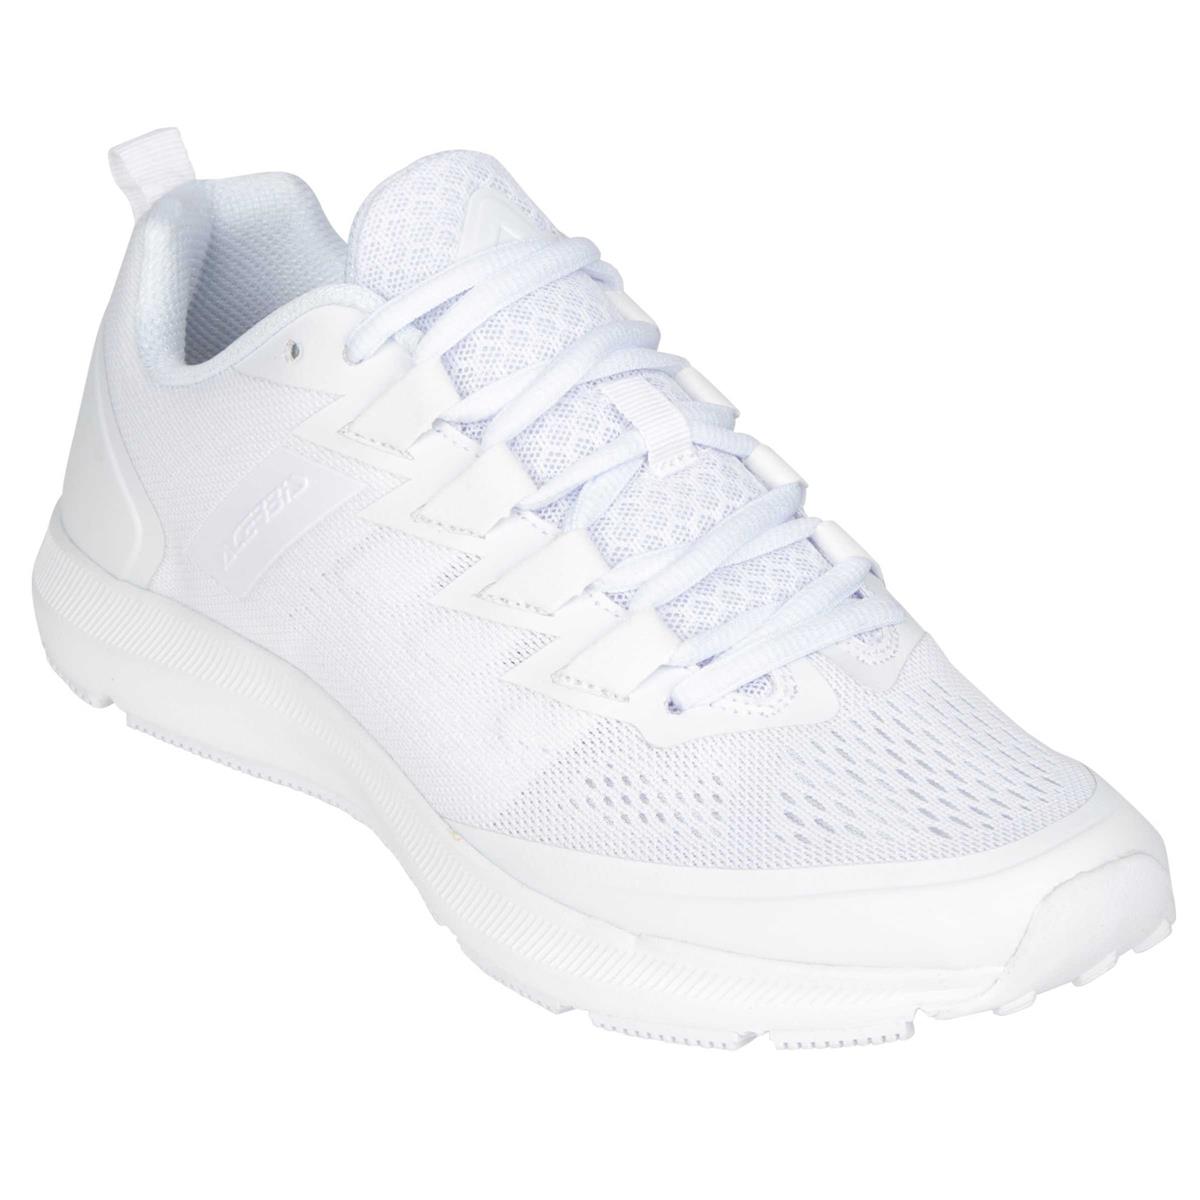 Acerbis Shoes X-KAL White